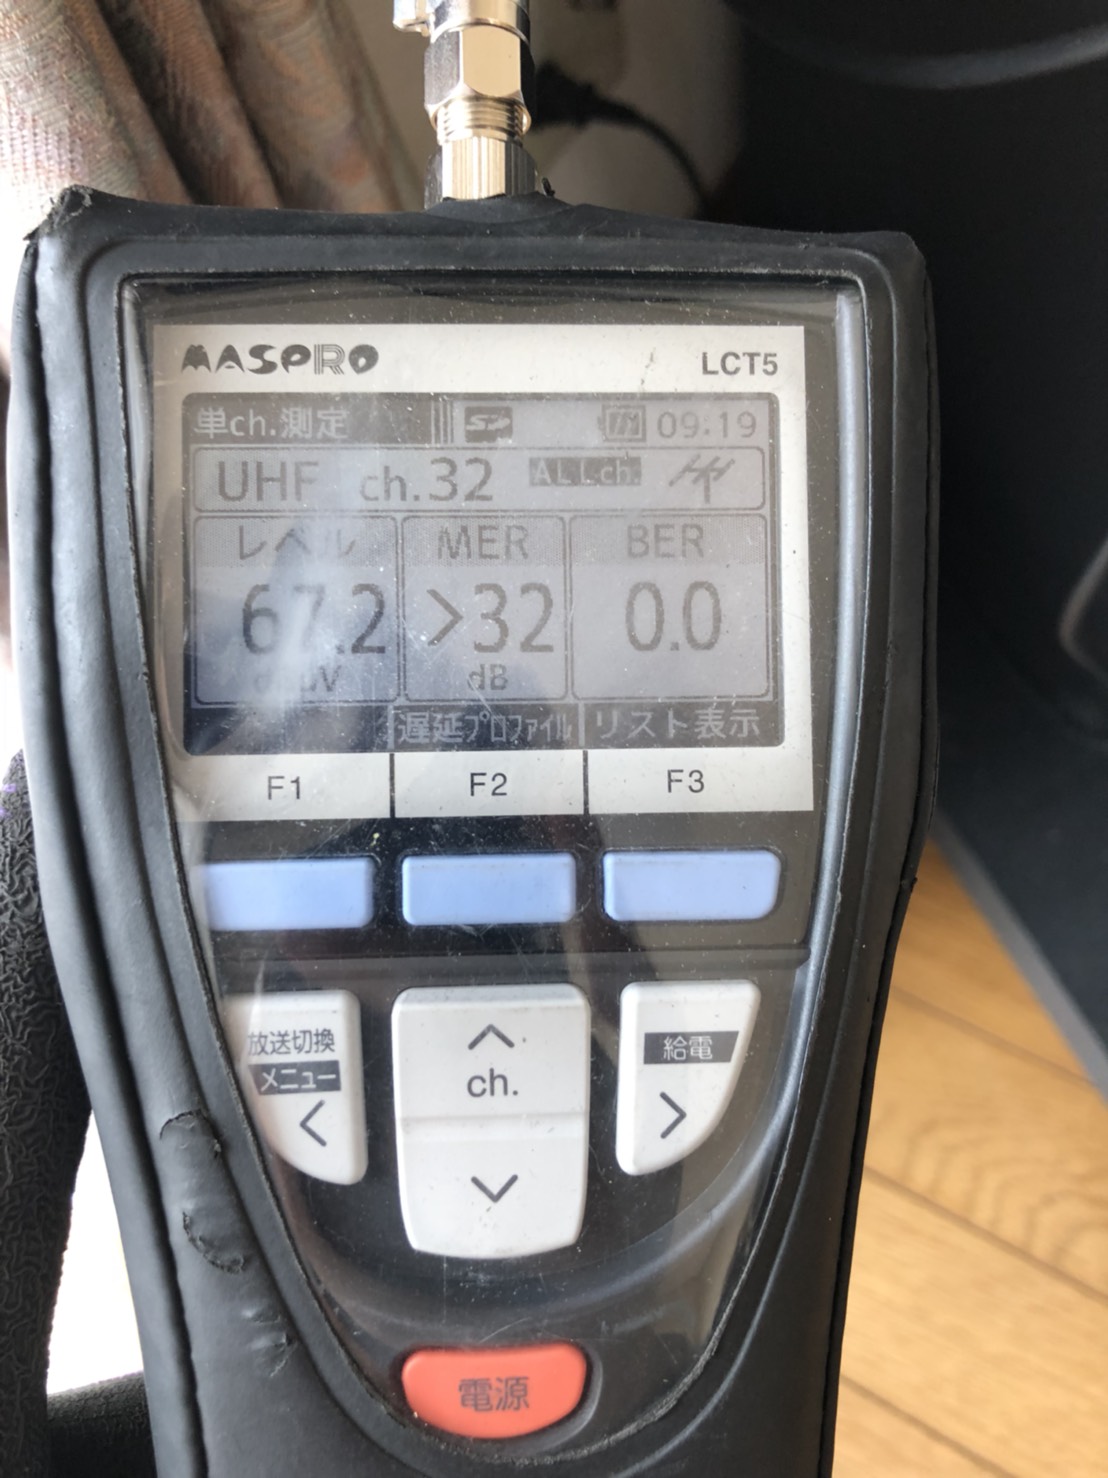 レベルチェッカーで測定したテレビ埼玉の電波レベル